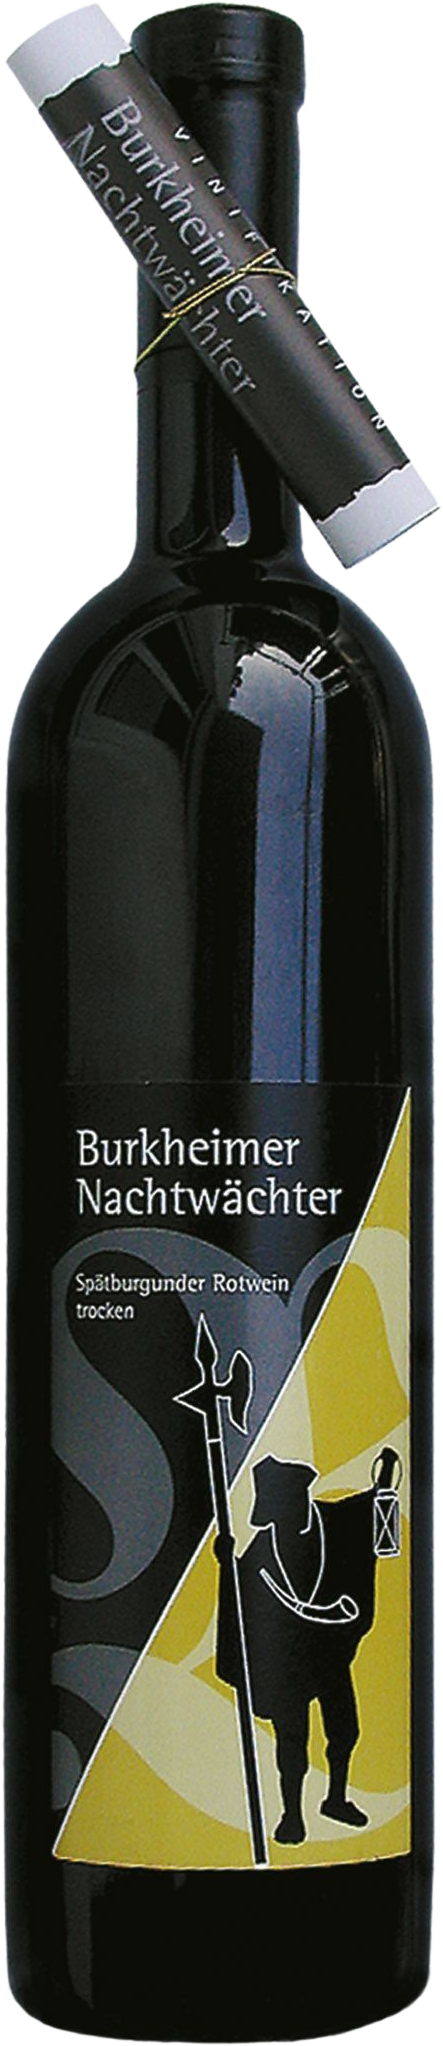 Kaiserstuhl Feuerberg Falstaff - Burkheim - 2019 Nachtwächter Falstaff Spätburgunder am Winzer Burkheimer